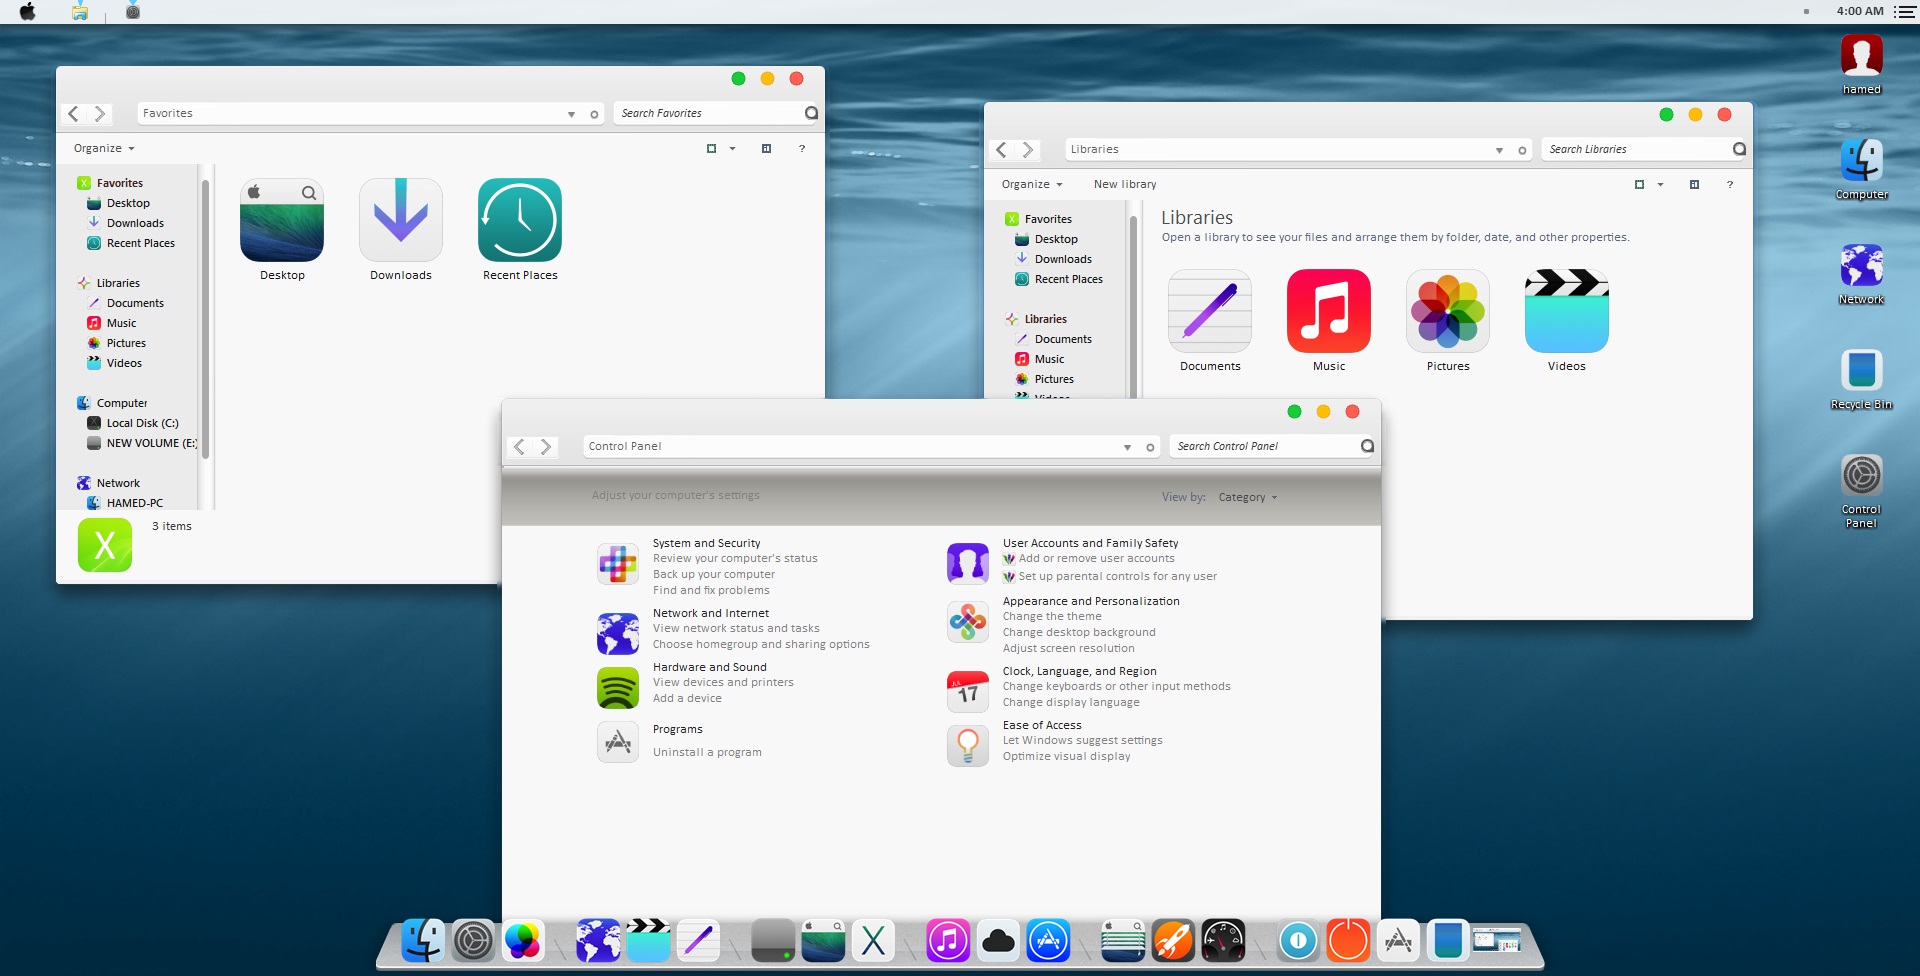 Mac OS X Yosemite Theme for Win7/8/8.1